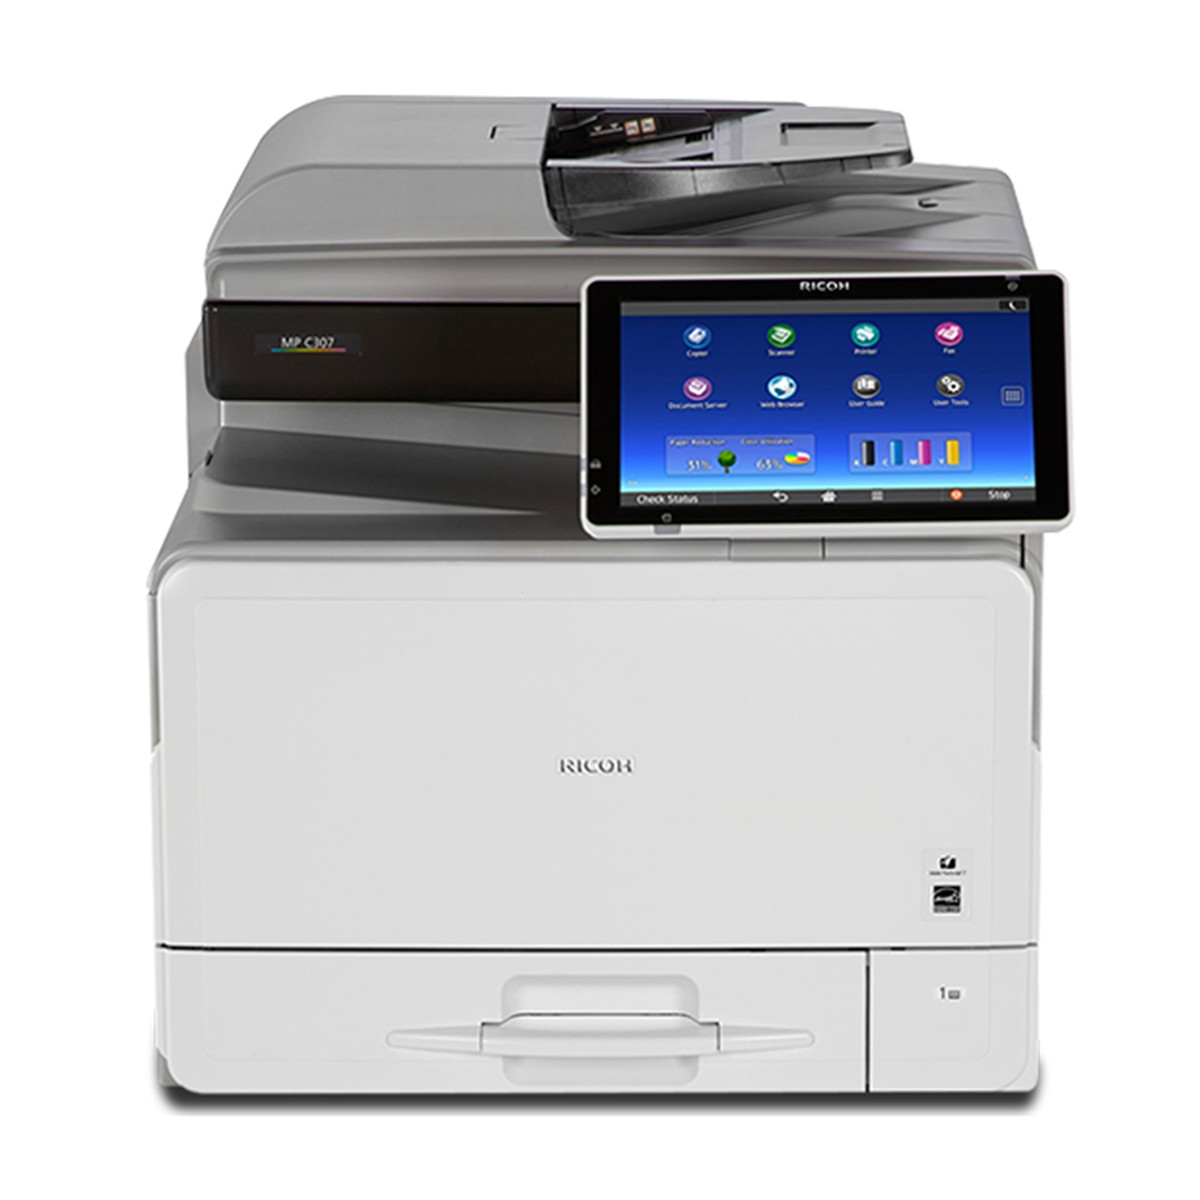 Impressora Ricoh MP C307 MPC307 | Multifuncional Laser Colorida com